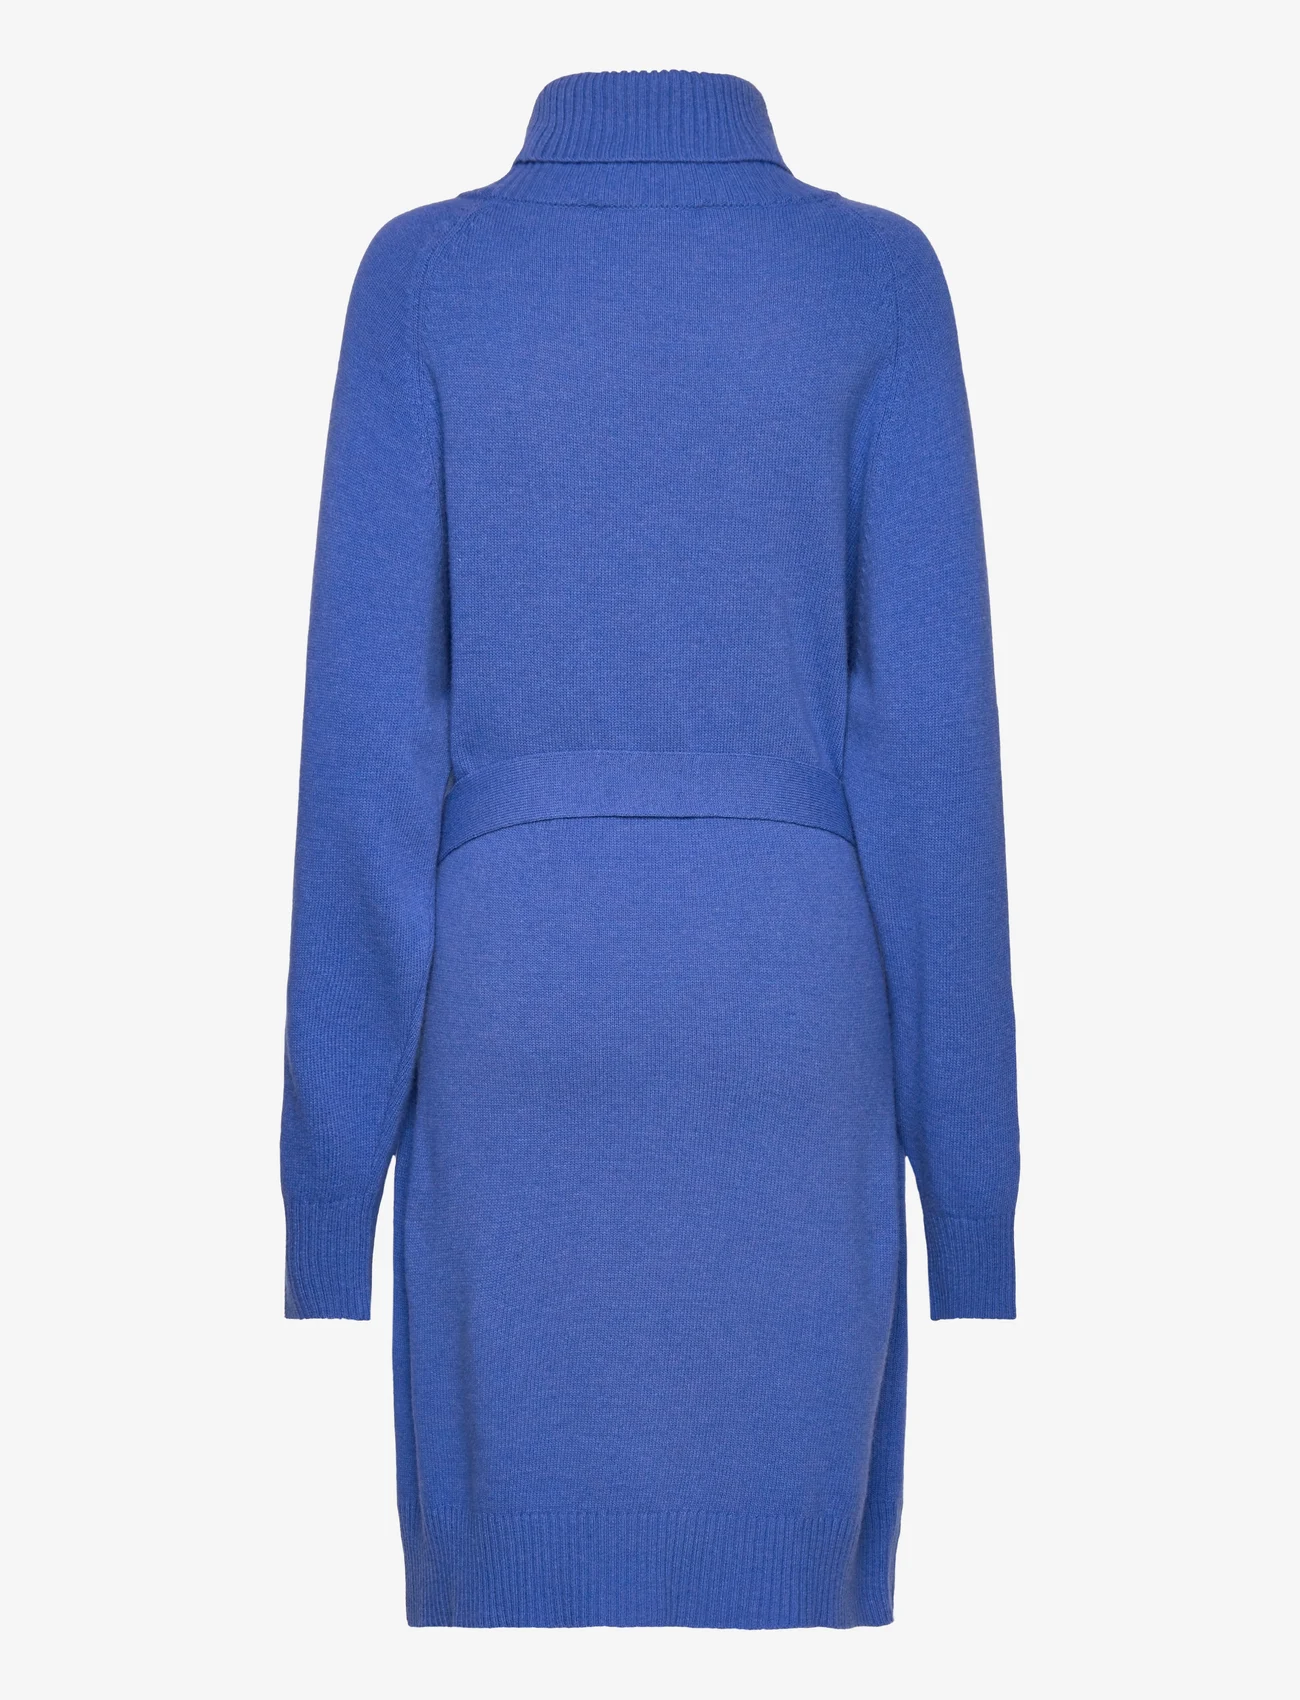 IVY OAK - Mini Knit Dress - strickkleider - light cobalt blue - 1